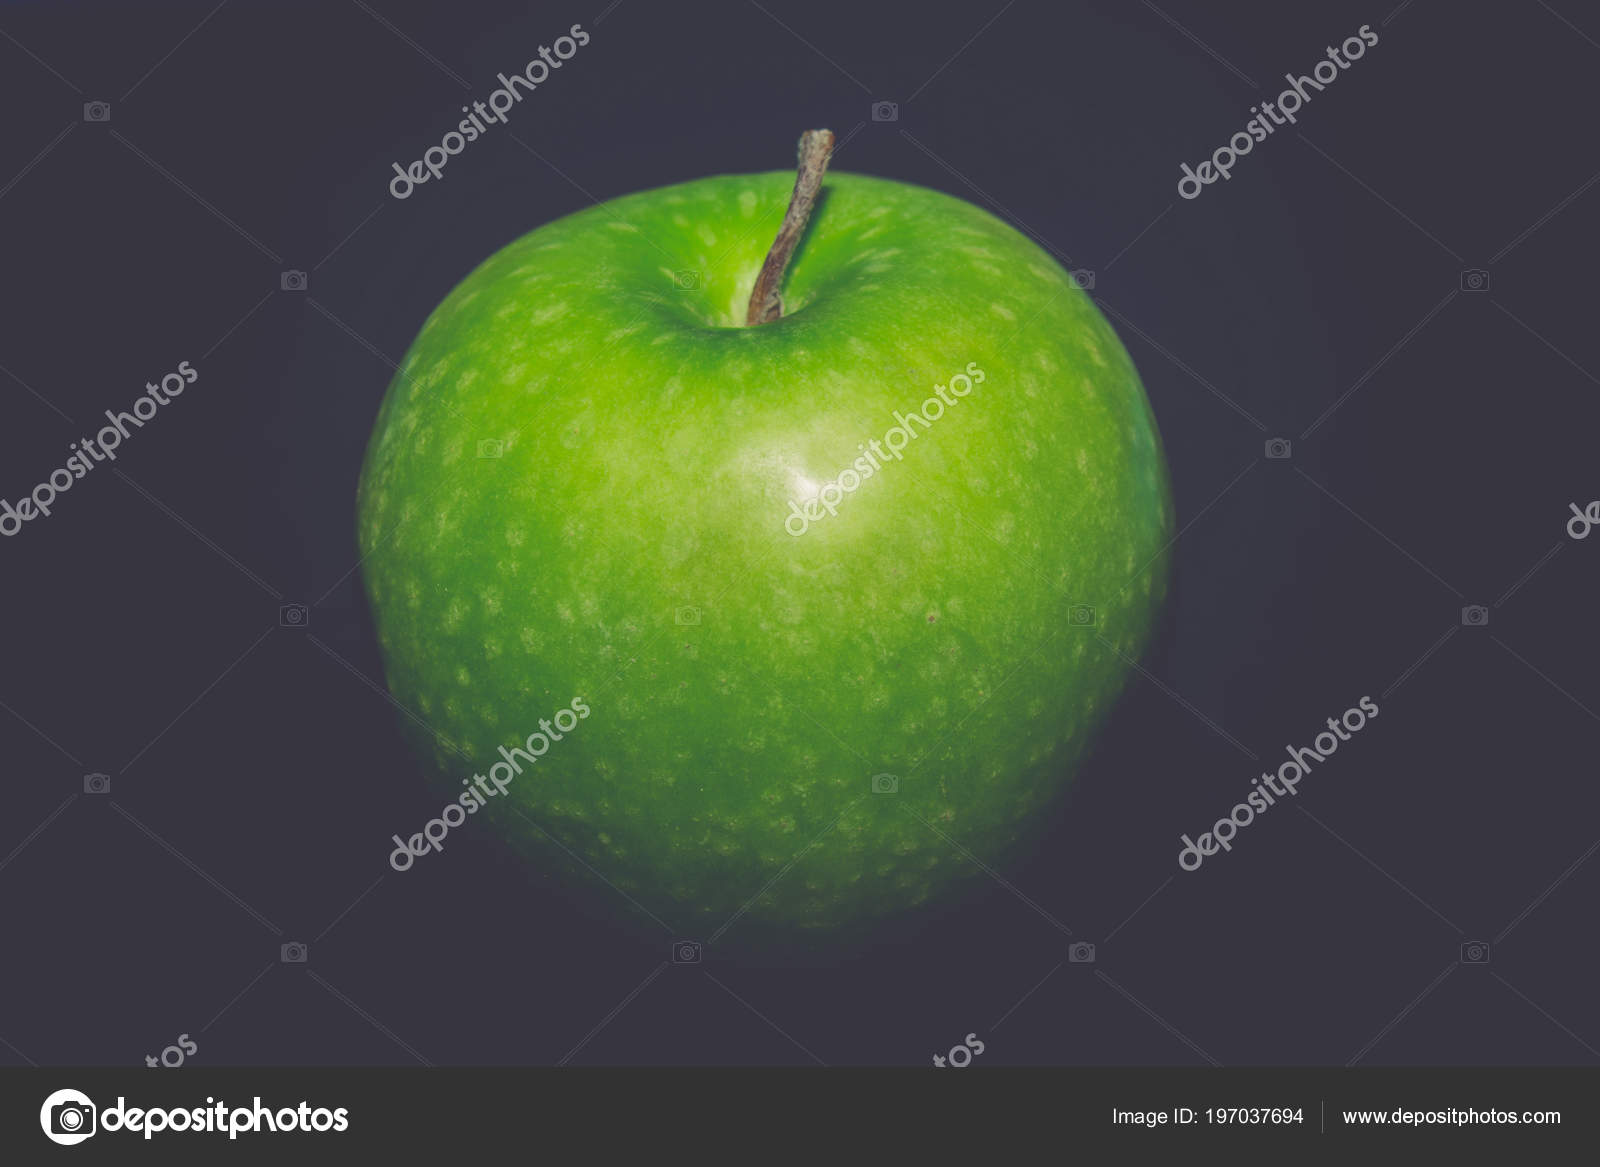 关闭葡萄酒的背景与绿色的苹果仍然生活 图库照片 C Artshock 197037694